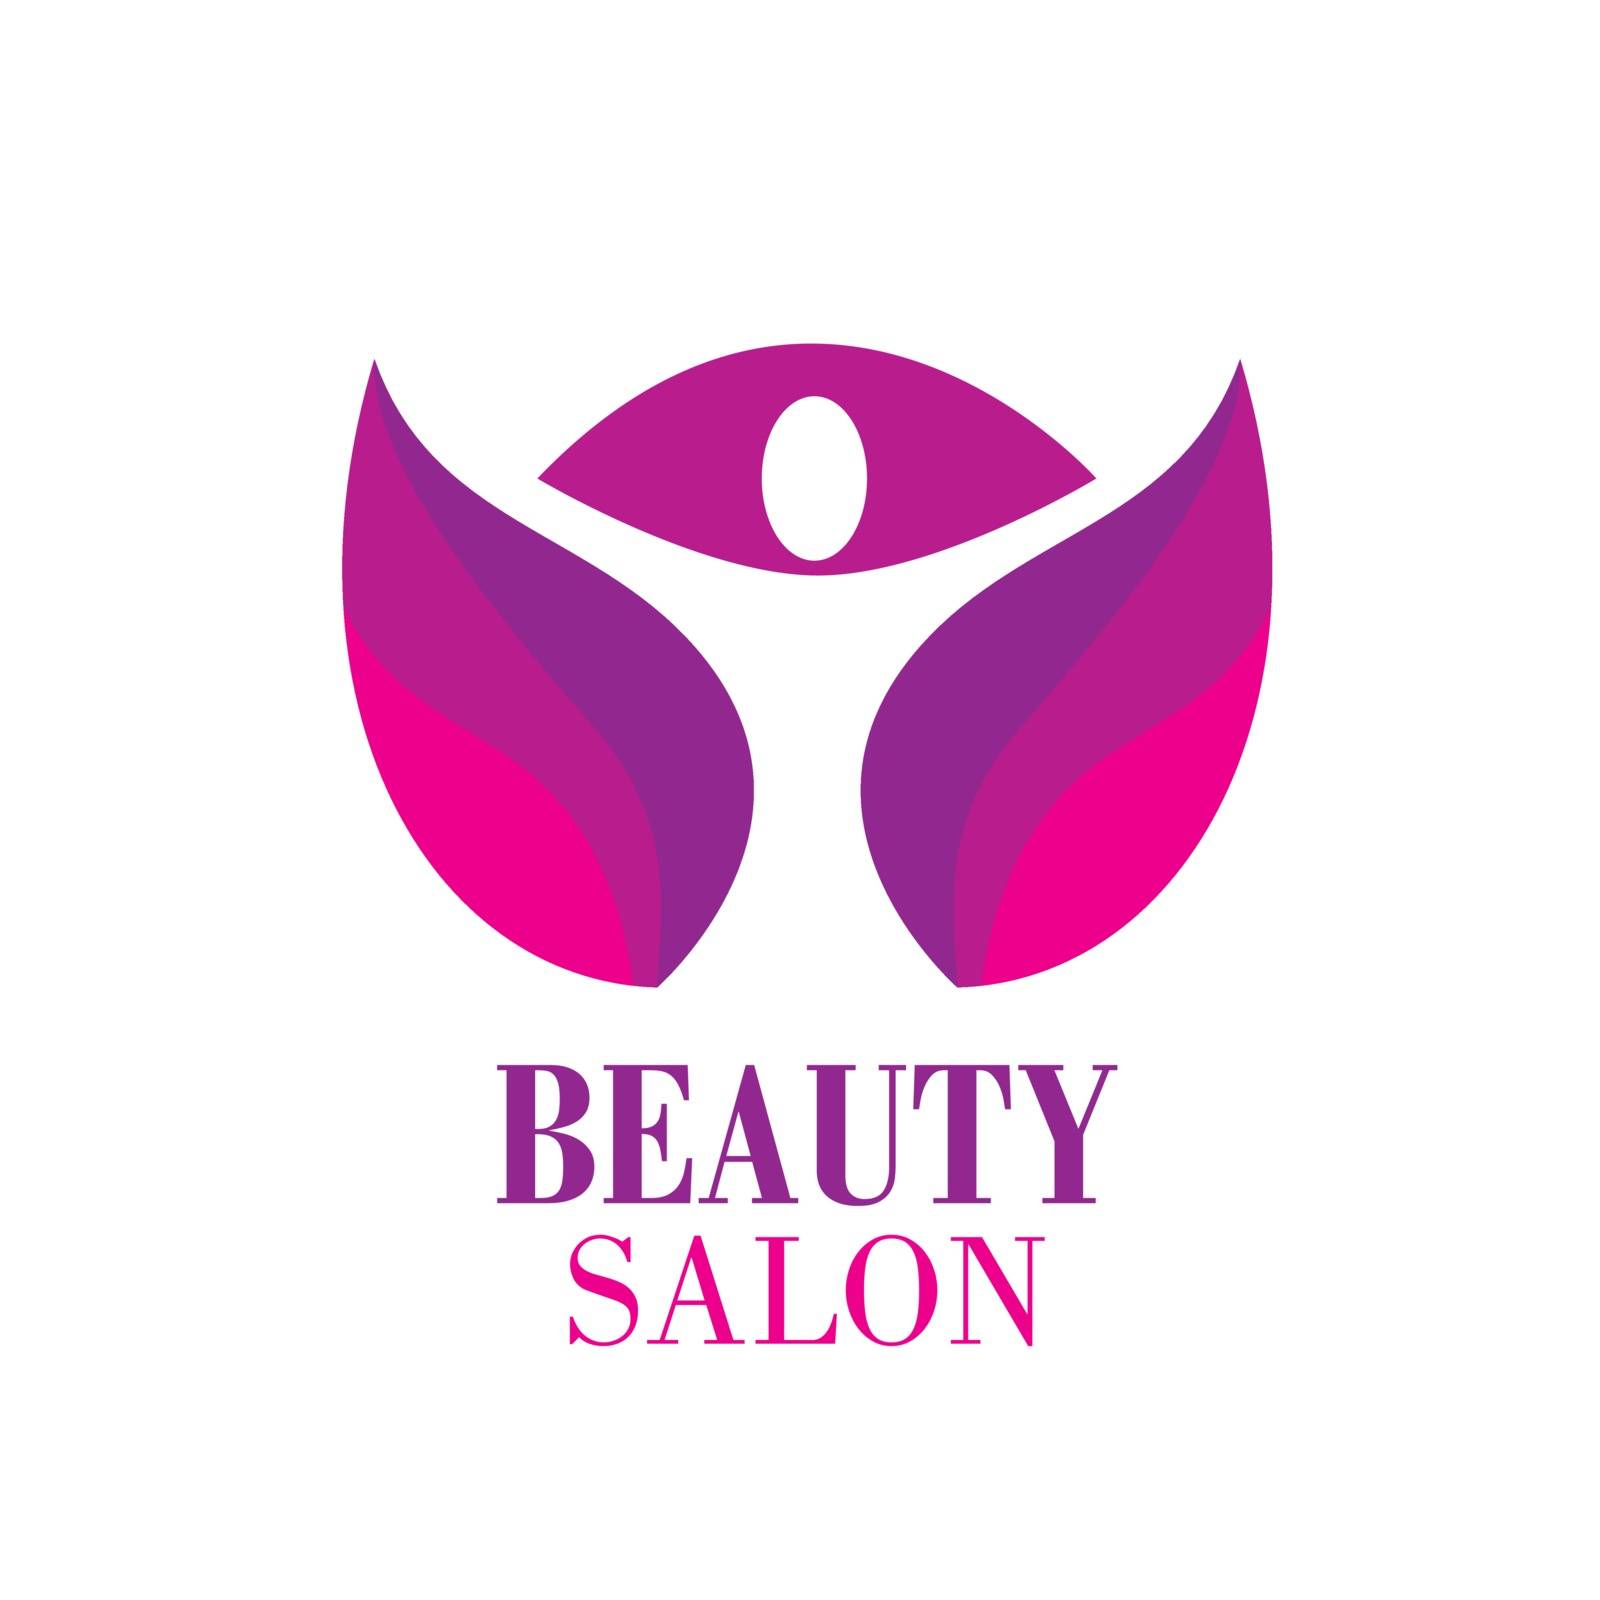 Beauty Female Face Logo Design.Cosmetic salon logo design. Creative Woman Face Vector